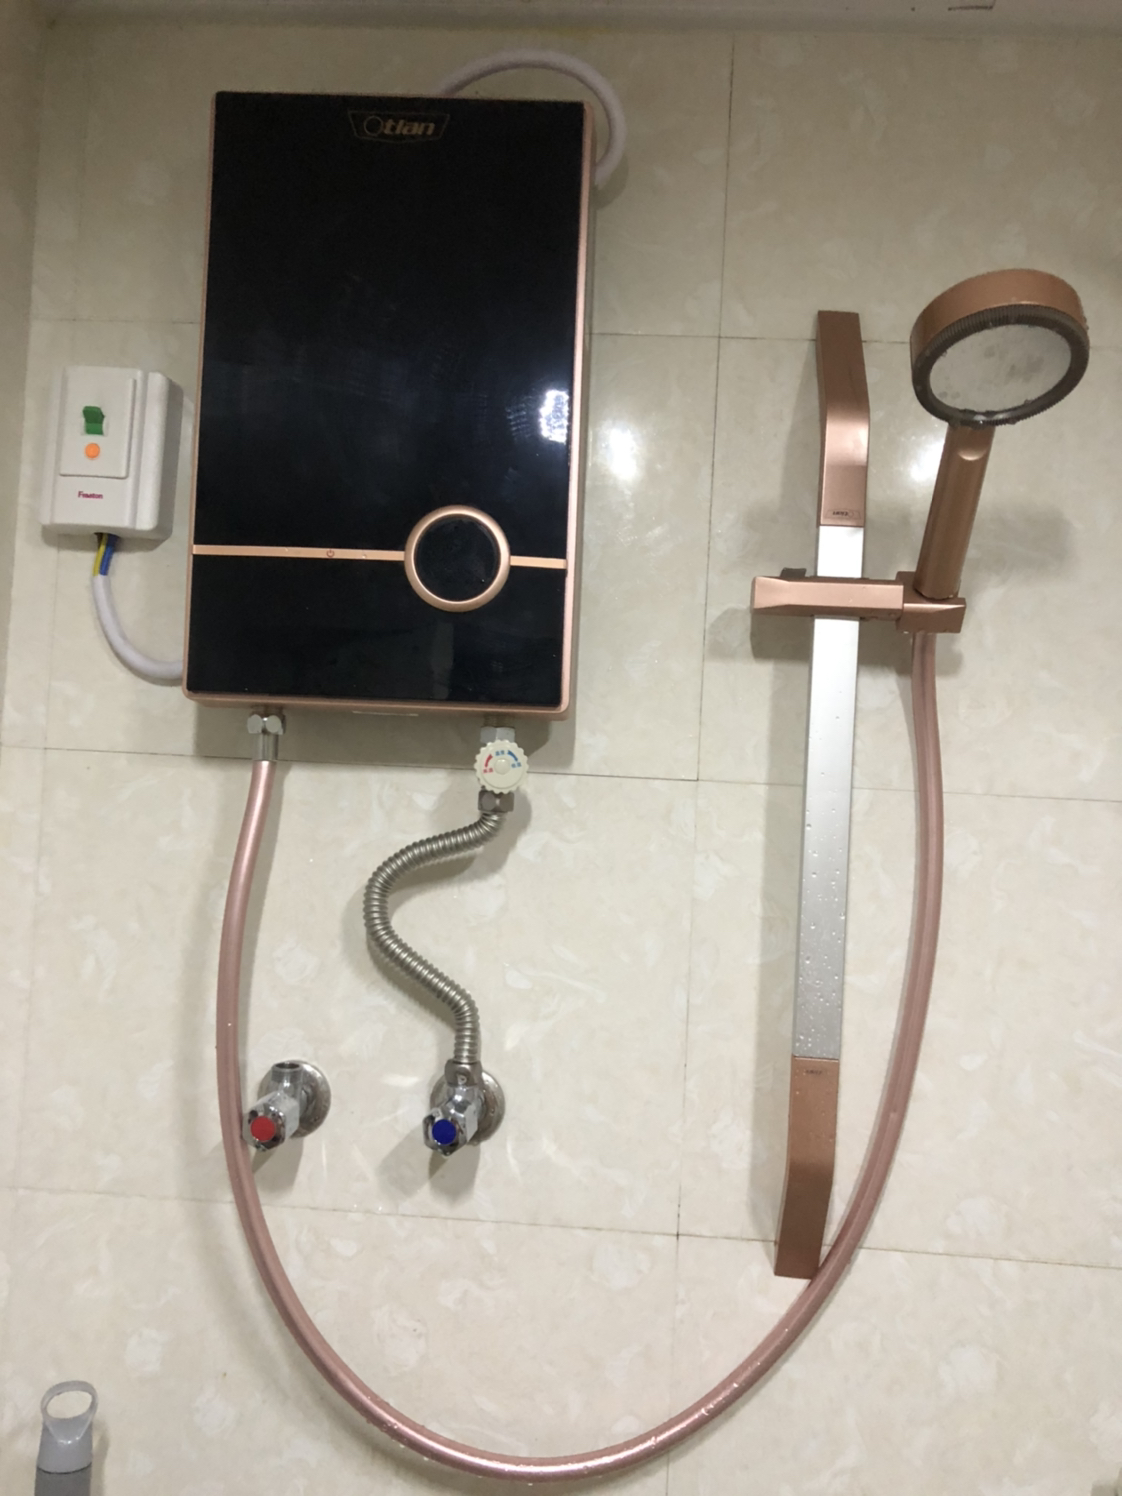 即热式电热水器小型家用智能变频恒温淋浴洗澡过水热卫生间免储水快热